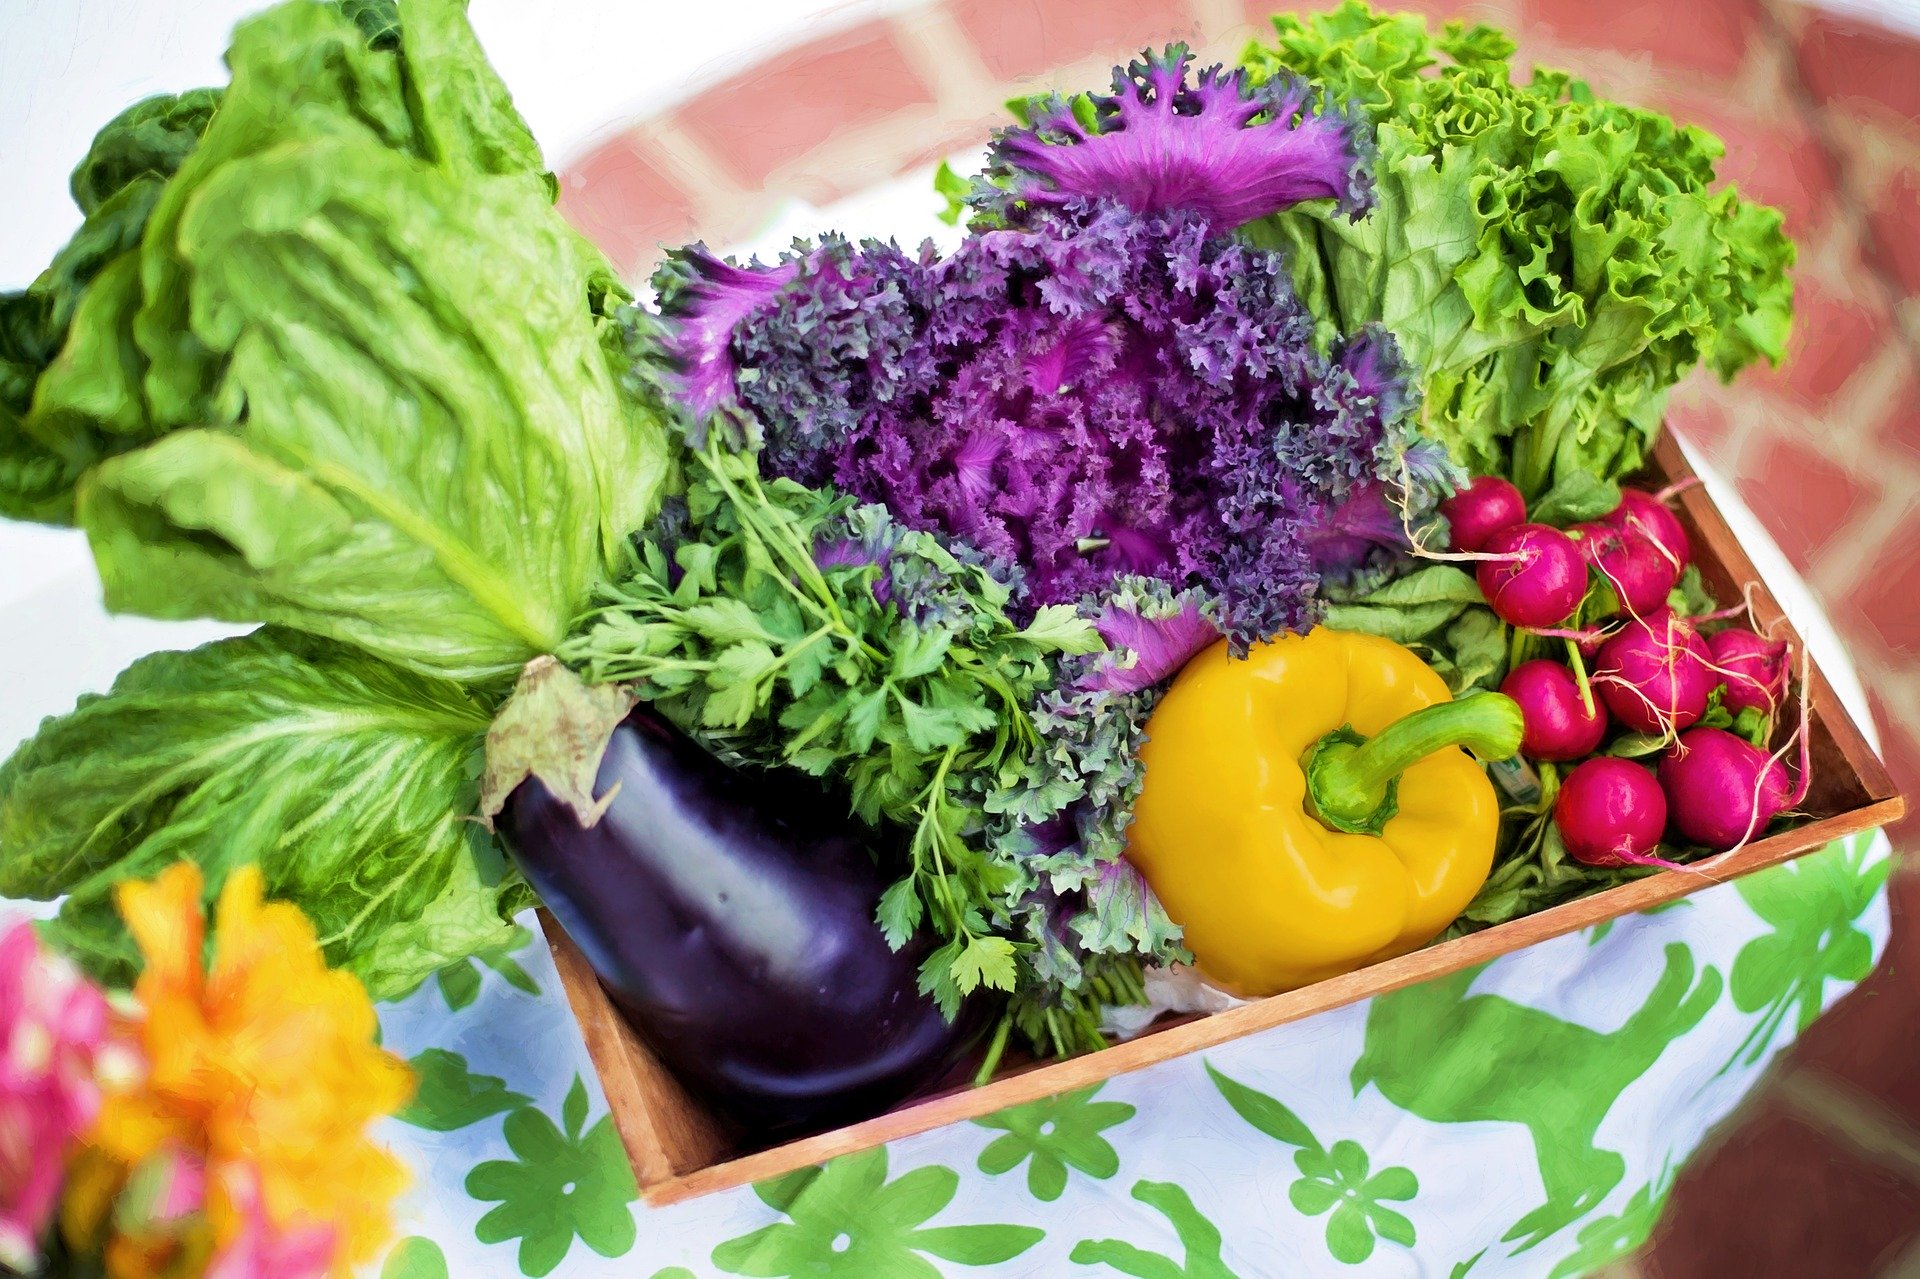 ふるさと納税でもらえる新鮮な野菜の人気ランキング【2020年4月】 | ふるさと納税の比較・ランキングならHEDGE GUIDE